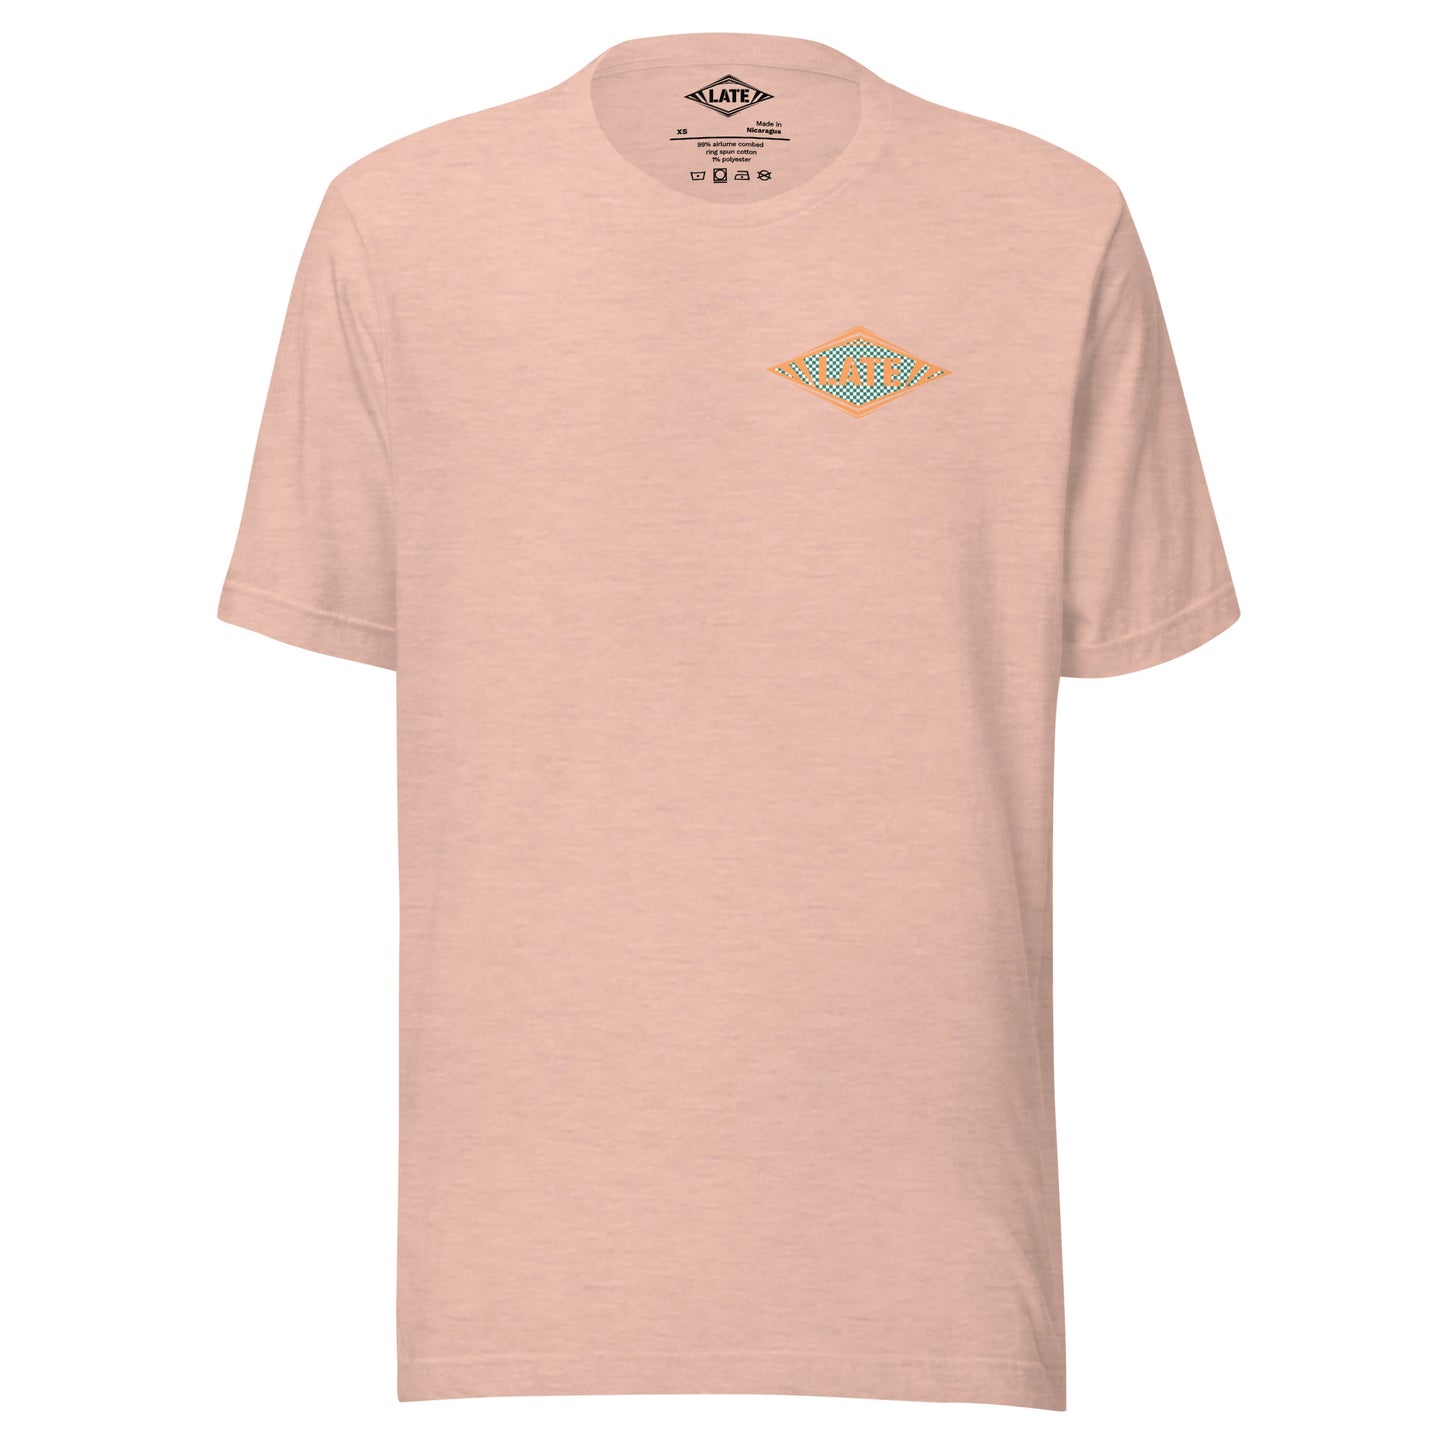 T-Shirt Shred It skateboard style Vans logo Late à carreaux. T-Shirt unisex de face couleur rose